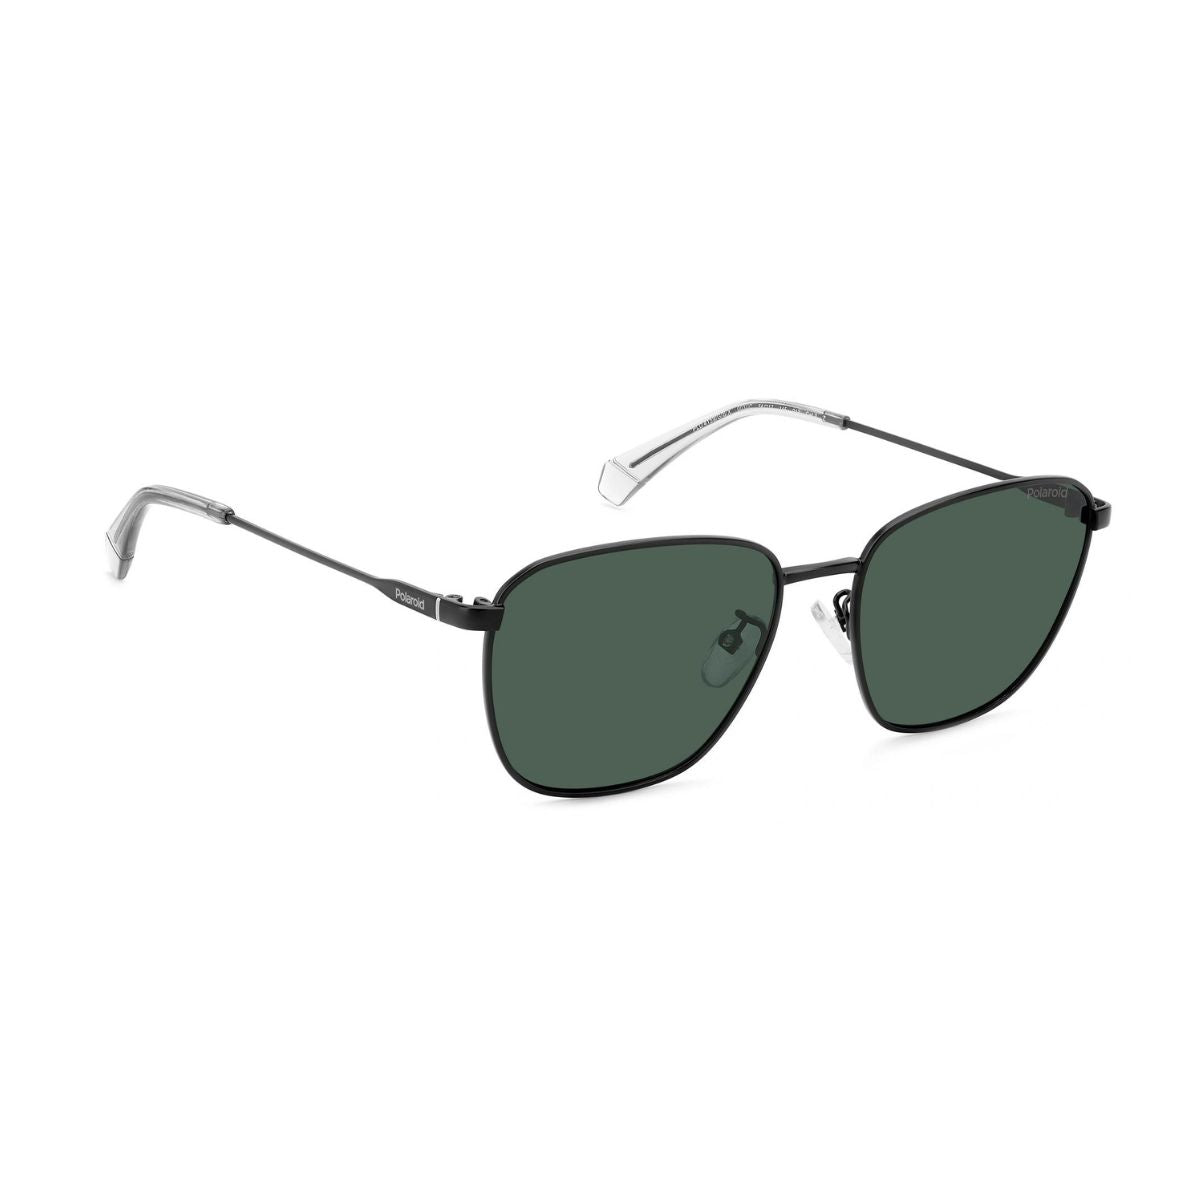 "Polariod 4159 003 polarized Square Sunglasses For Men's Online At Optorium"